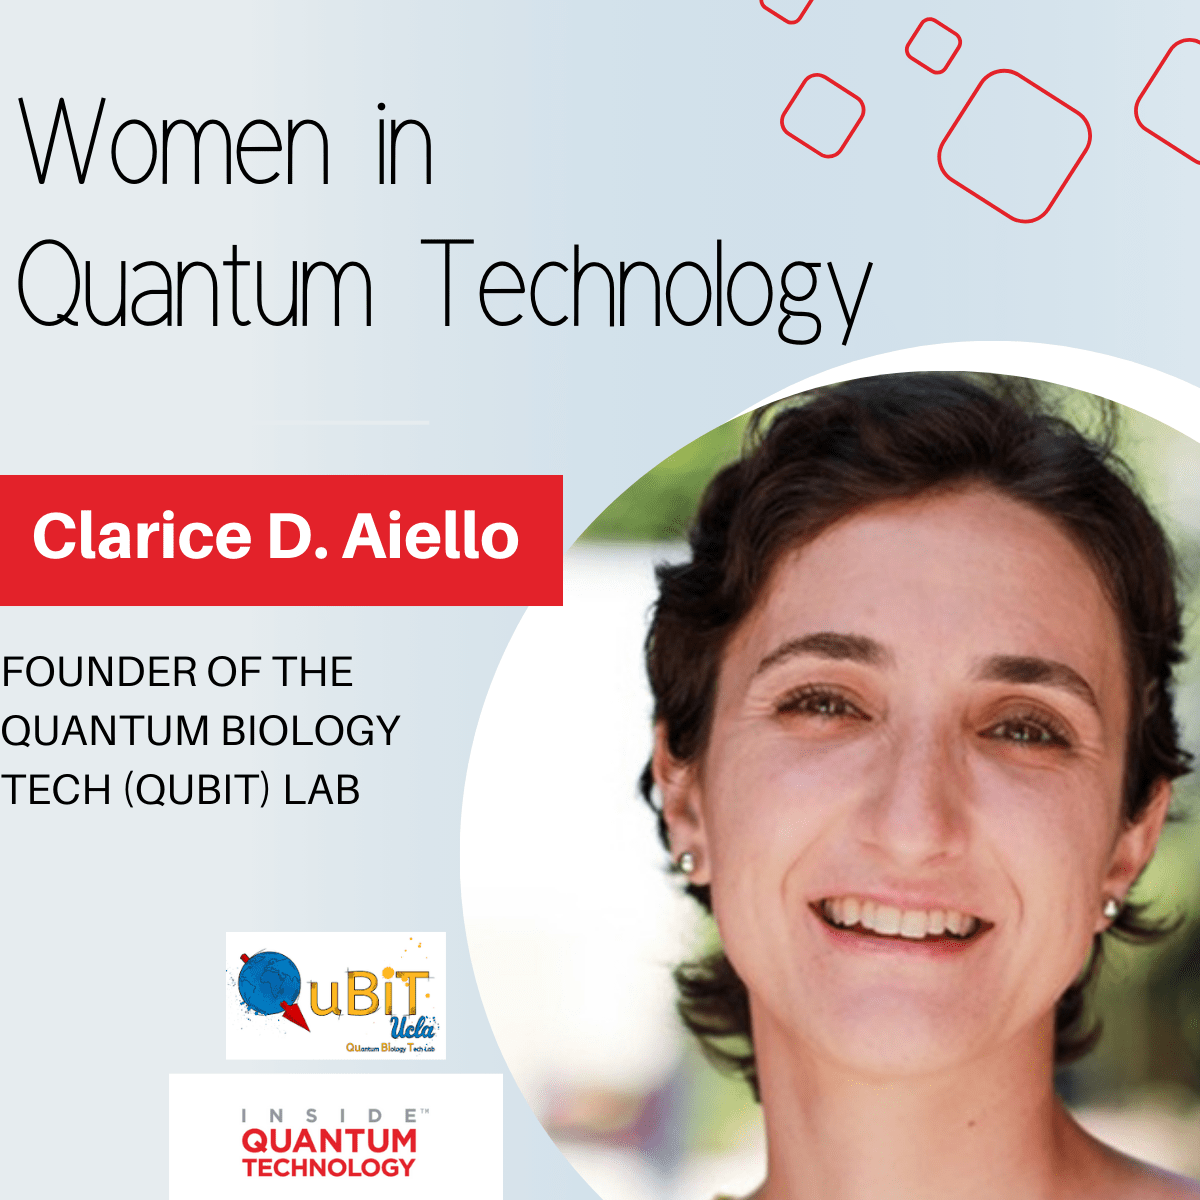 Kvanttehnoloogia naised: Dr Clarice D. Aiello Quantum Biology Tech (QuBiT) laborist – Inside Quantum Technology